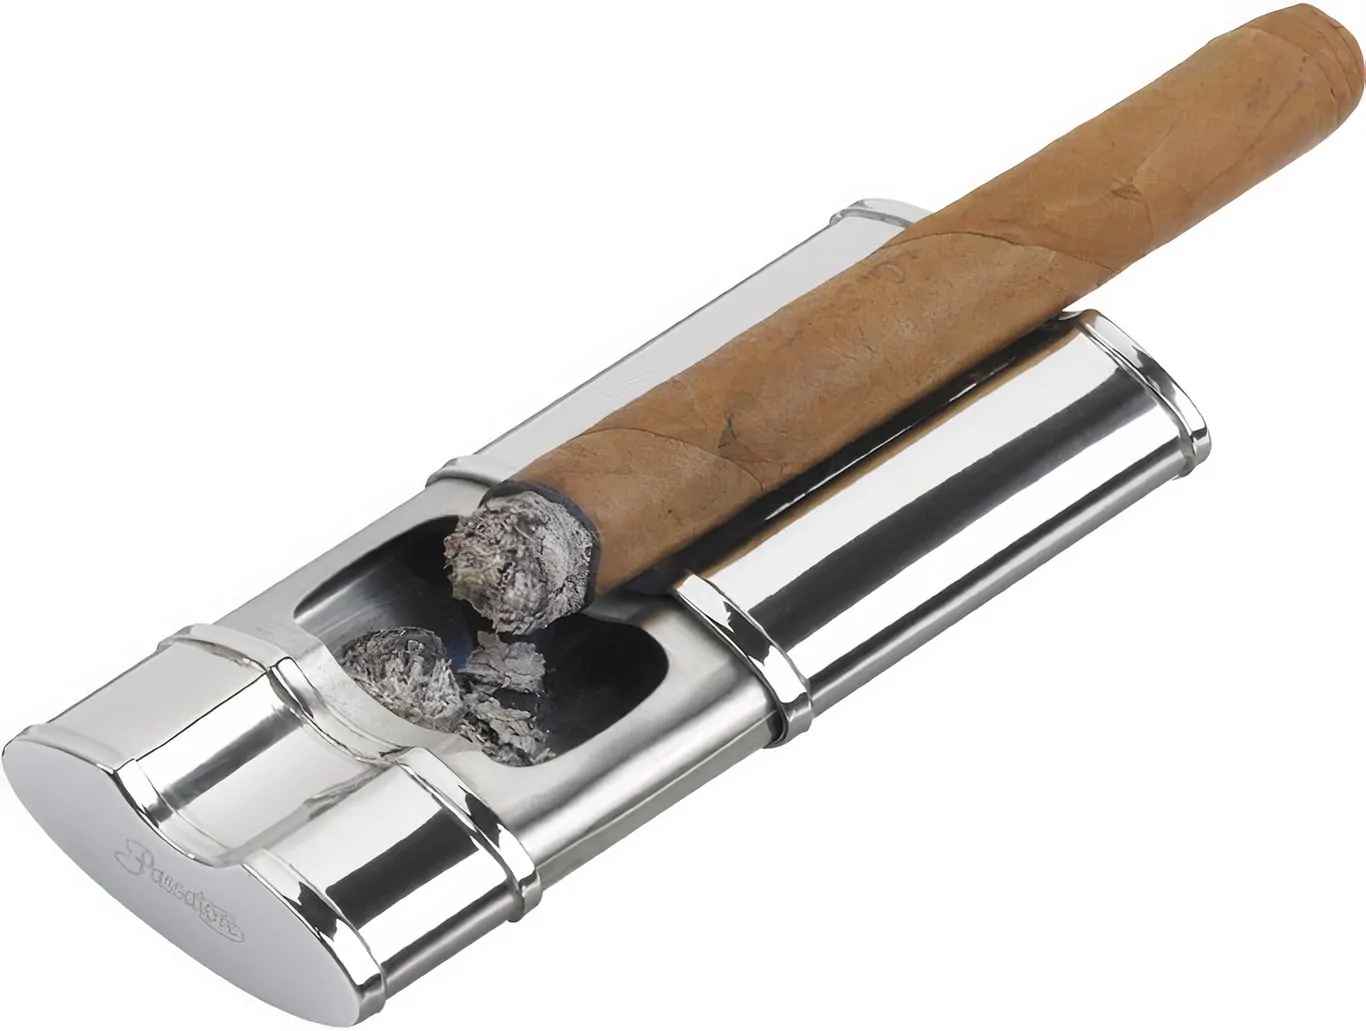 OYHBO Zigarren-Aschenbecher-Set aus Holz mit Zigarrenschneider und Stanzer  – faltbarer Reise-Kompakter Zigarrenhalter Aschenbecher Sammlung Geschenk